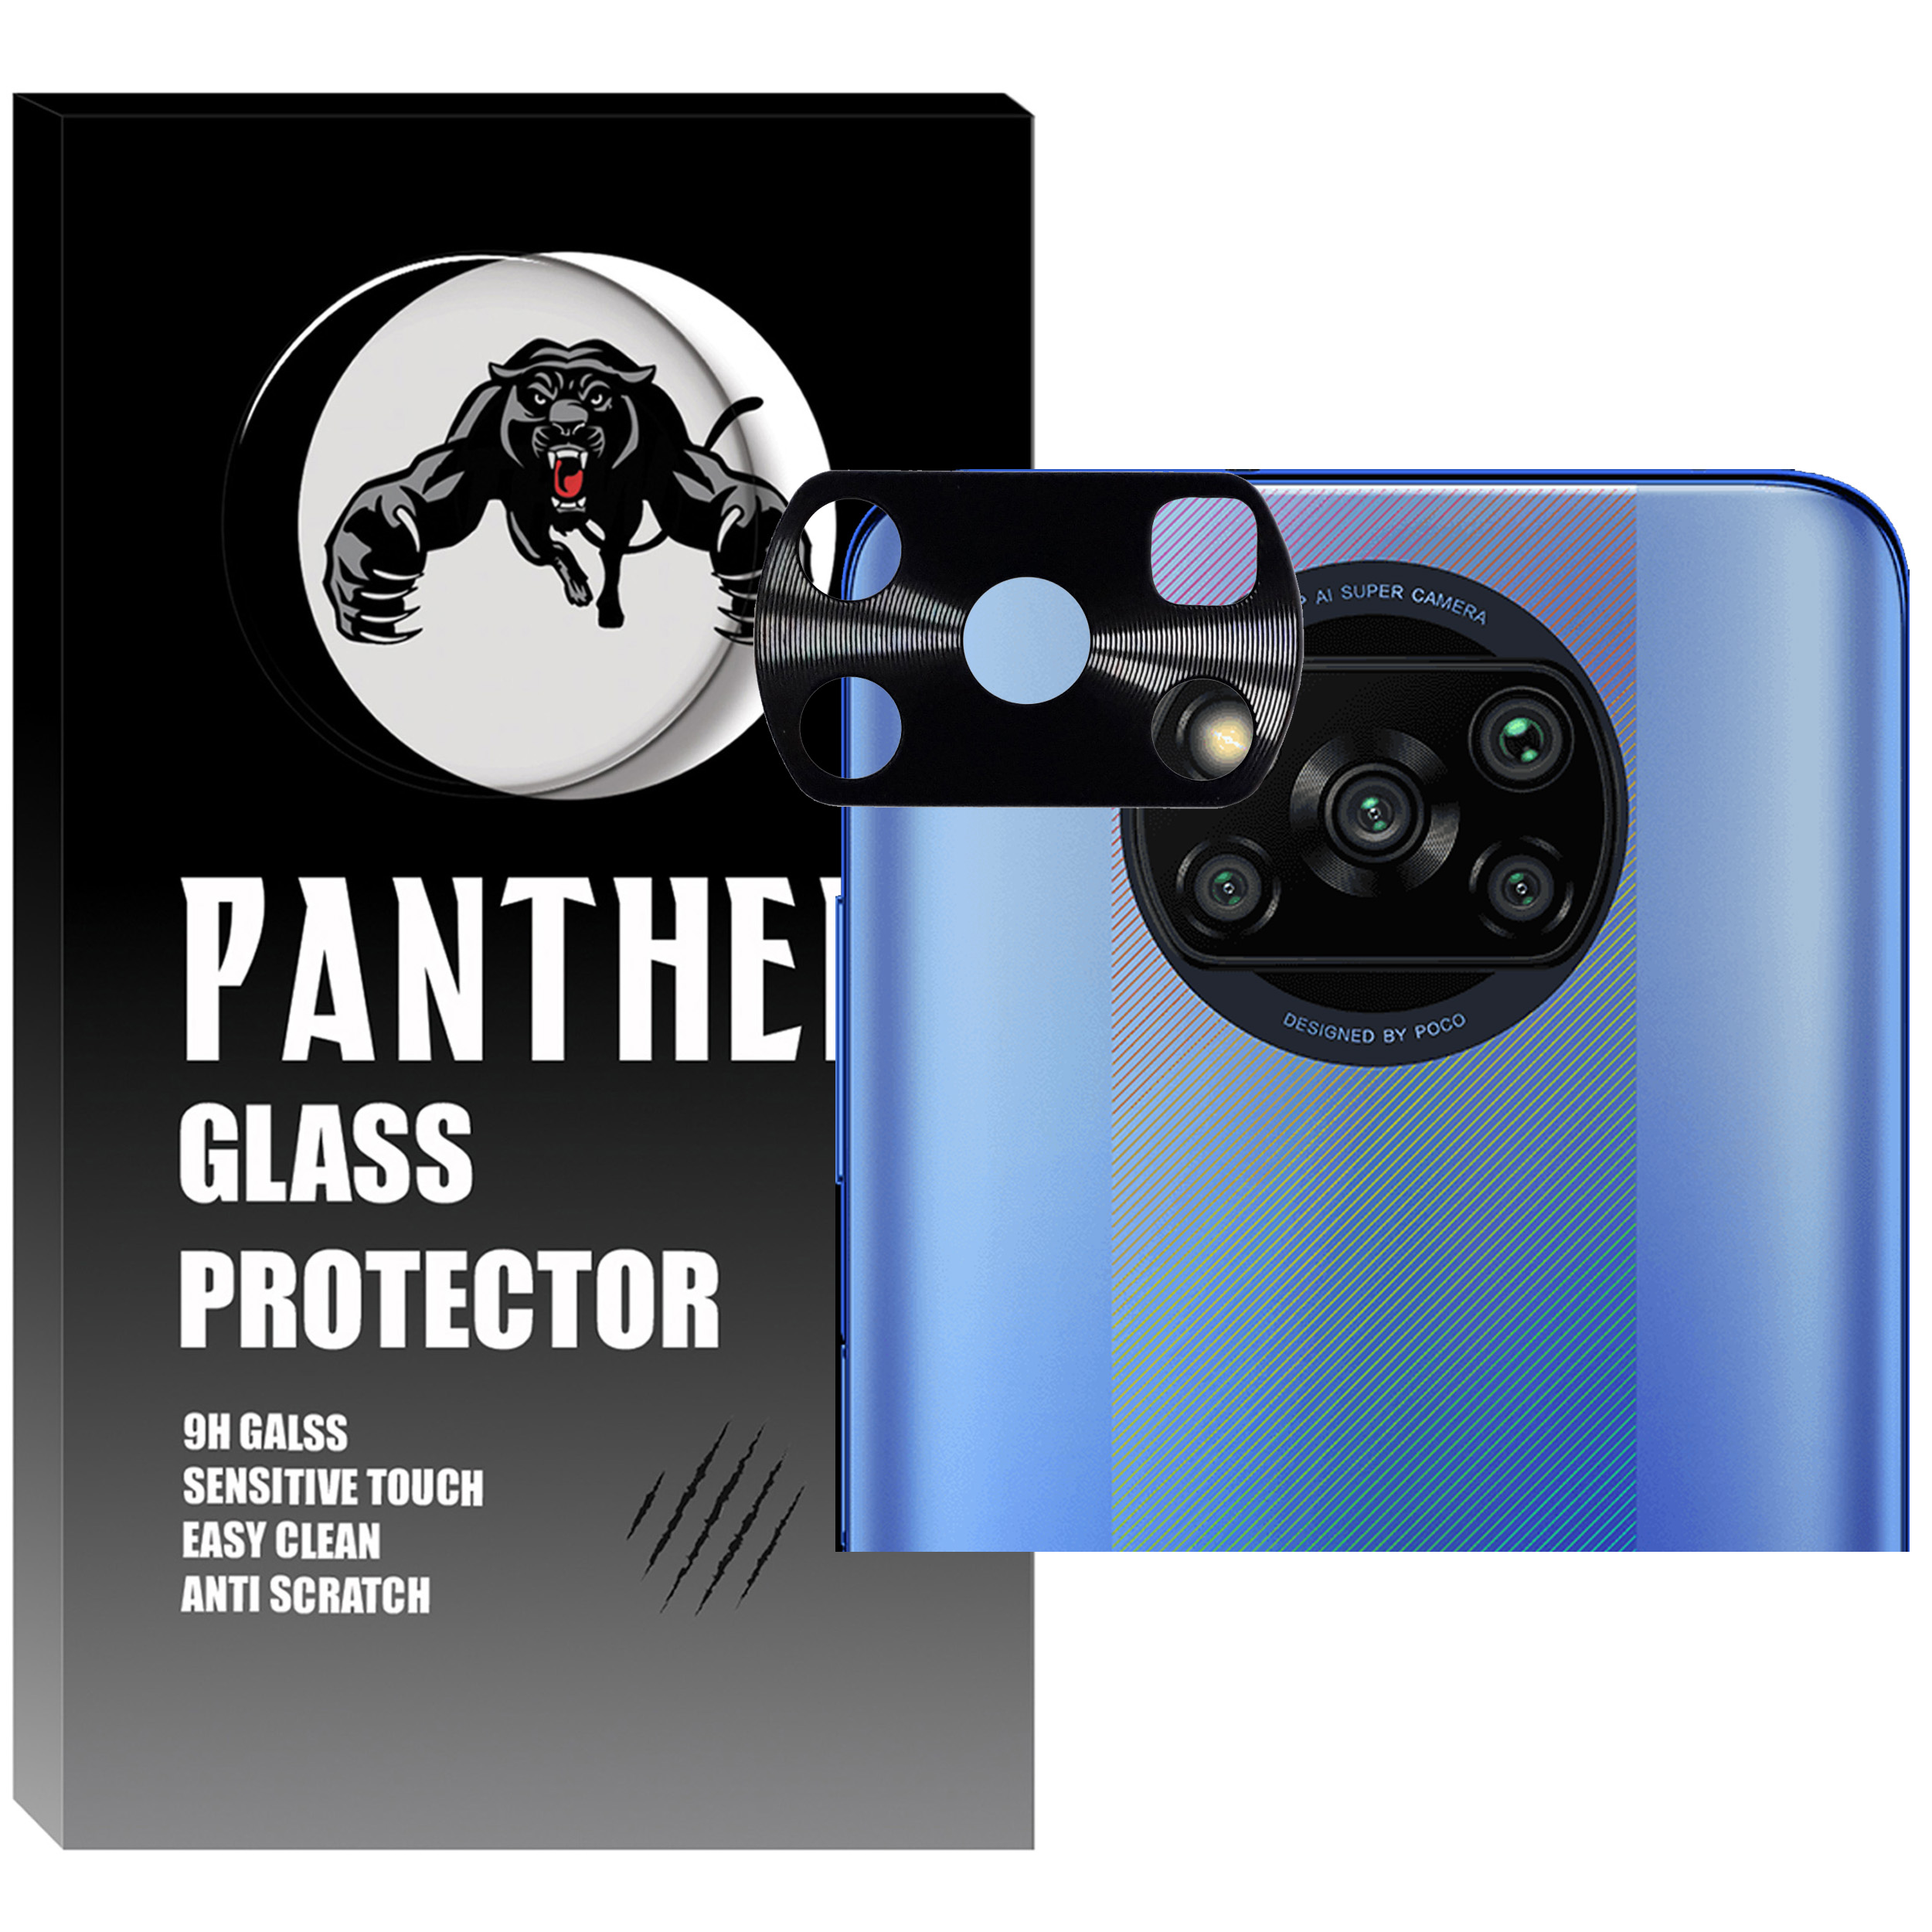 محافظ لنز دوربین پنتر مدل FL-01 مناسب برای گوشی موبایل شیائومی POCO X3 / POCO X3 PRO